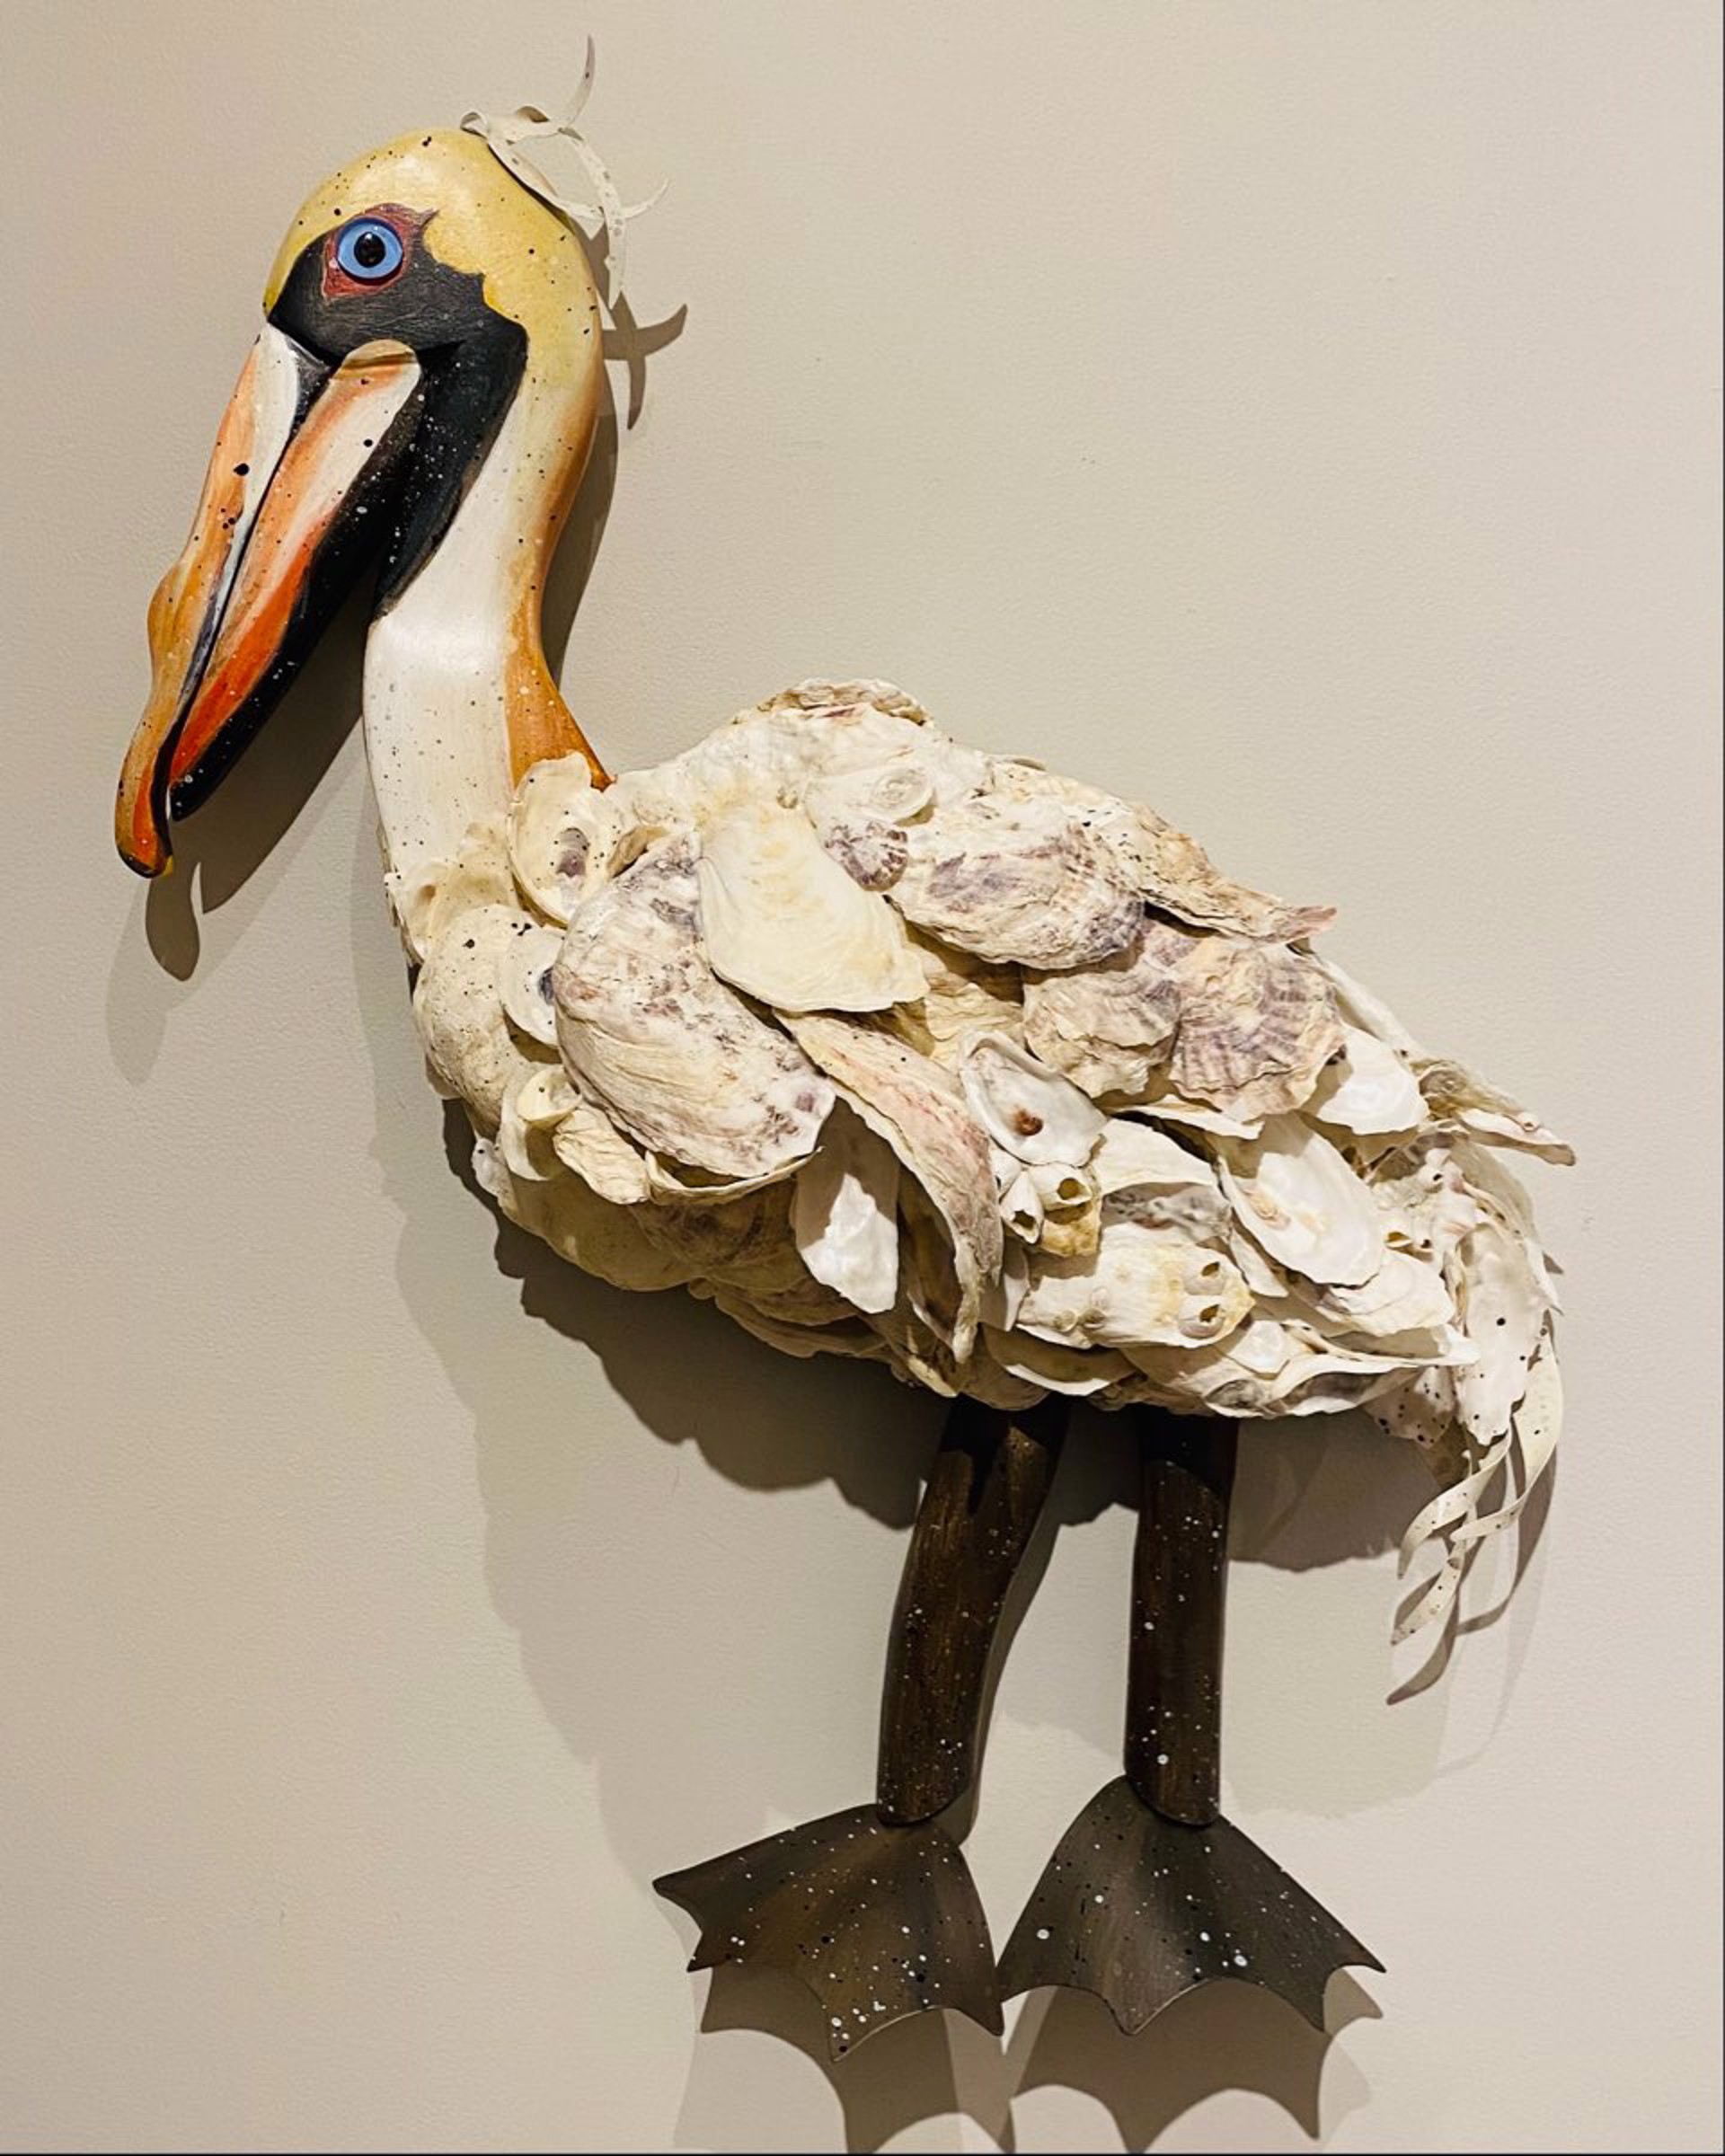 JW22-90 "Shem" Oyster Pelican by Jo Watson